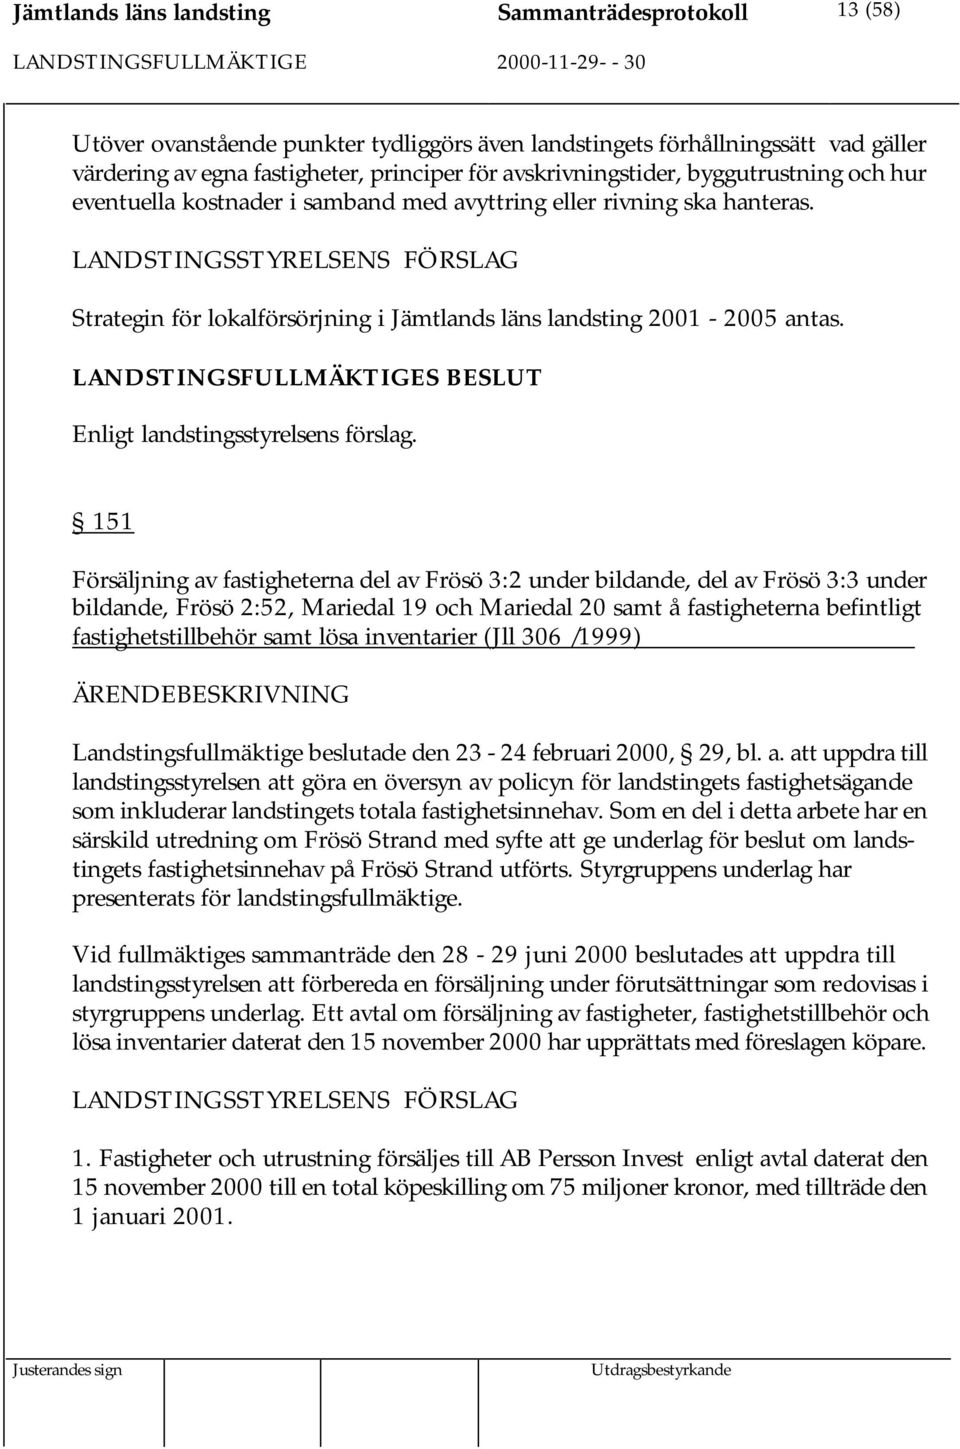 LANDSTINGSSTYRELSENS FÖRSLAG Strategin för lokalförsörjning i Jämtlands läns landsting 2001-2005 antas. Enligt landstingsstyrelsens förslag.